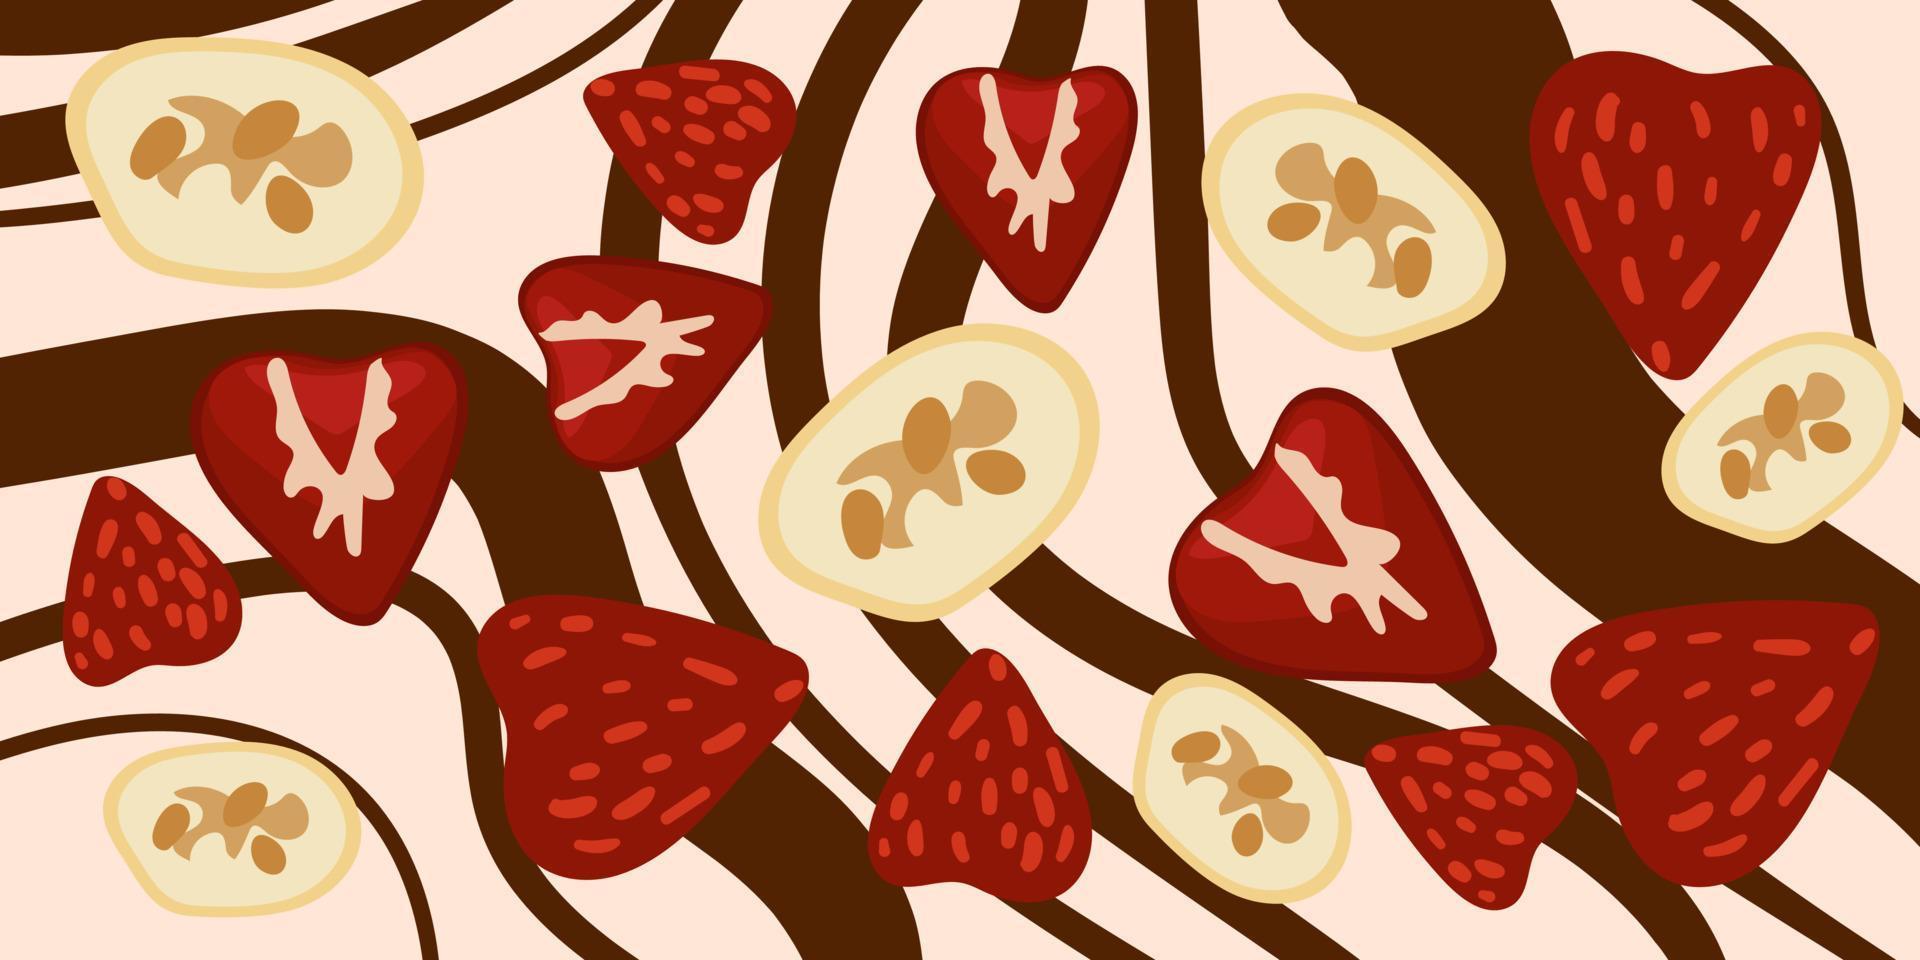 hintergrund der dekorativen schokolade zum valentinstag für liebhaber. Schokoladenhintergrund mit Beeren, Früchten, Nüssen. weiße und dunkle Schokolade mit Zusatzstoffen. Banner zu drucken vektor